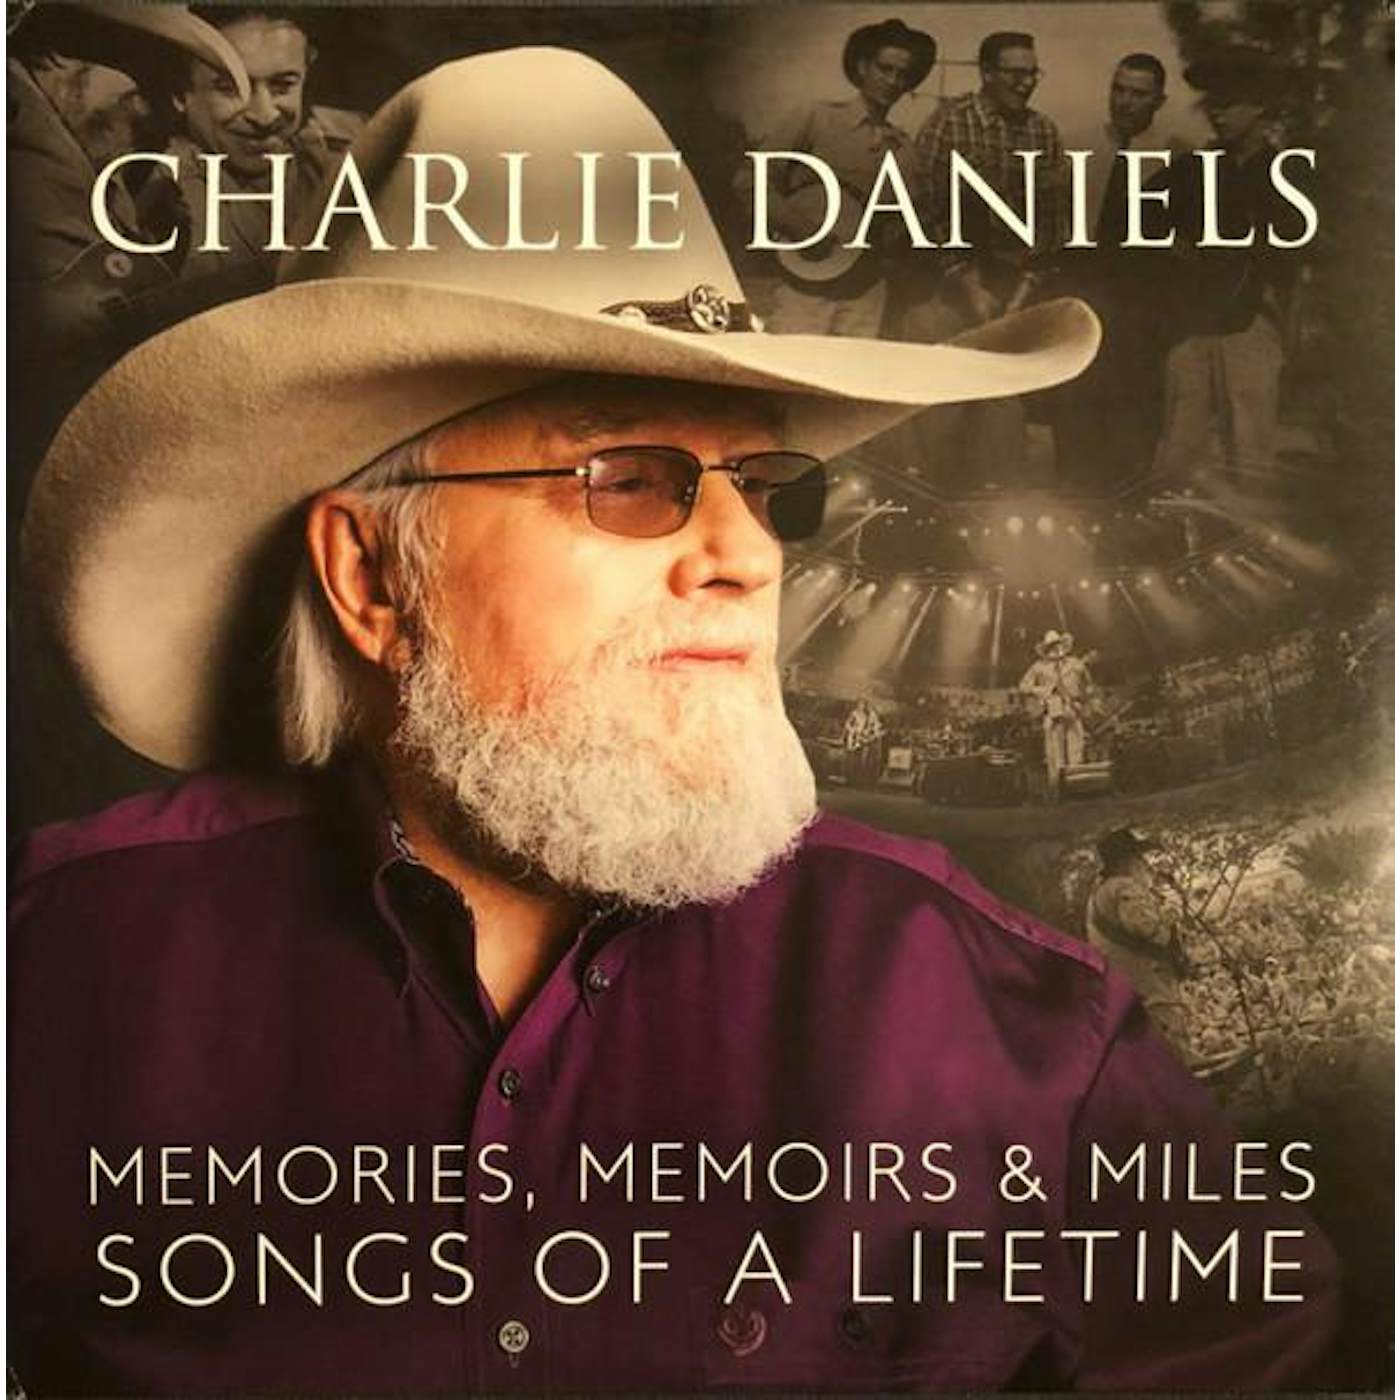 Charlie Daniels MEMORIES MEMOIRS & MILES: SONGS OF A LIFETIME Vinyl Record